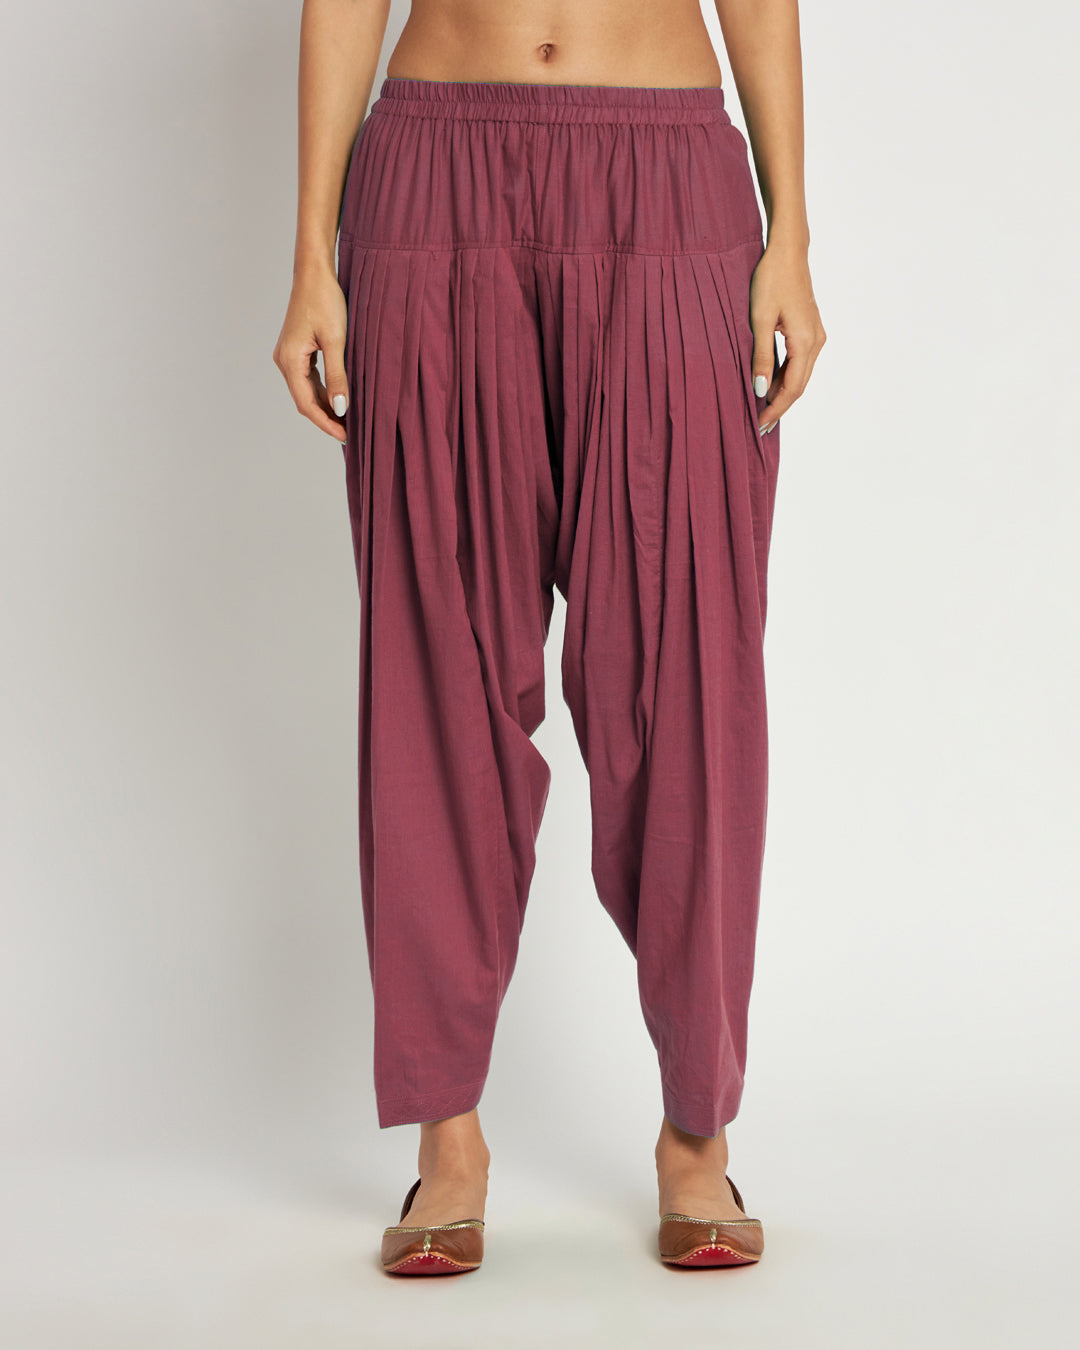 Cotton Women Patiala Salwar Regular Fit Salwar Pants Regular Maroon Free  Size | eBay